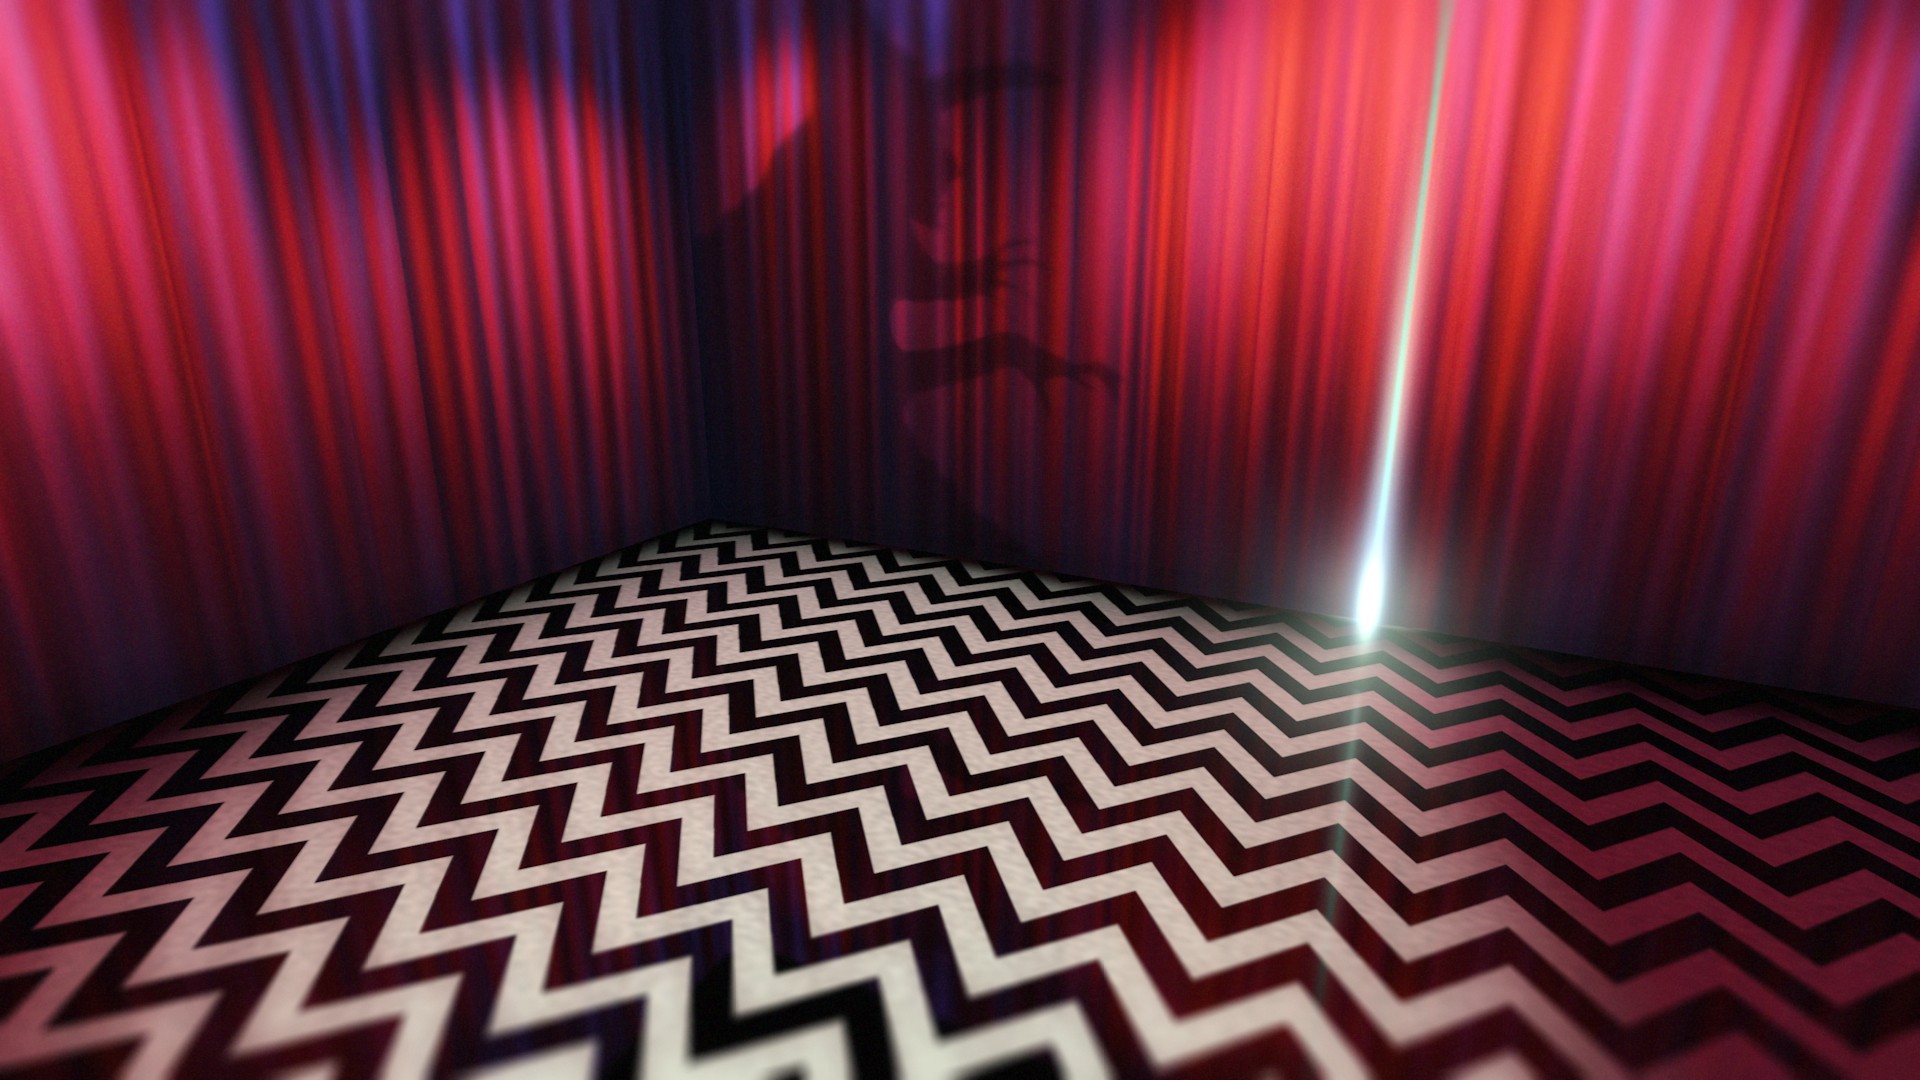 Twin Peaks Red Room Dwarf , HD Wallpaper & Backgrounds